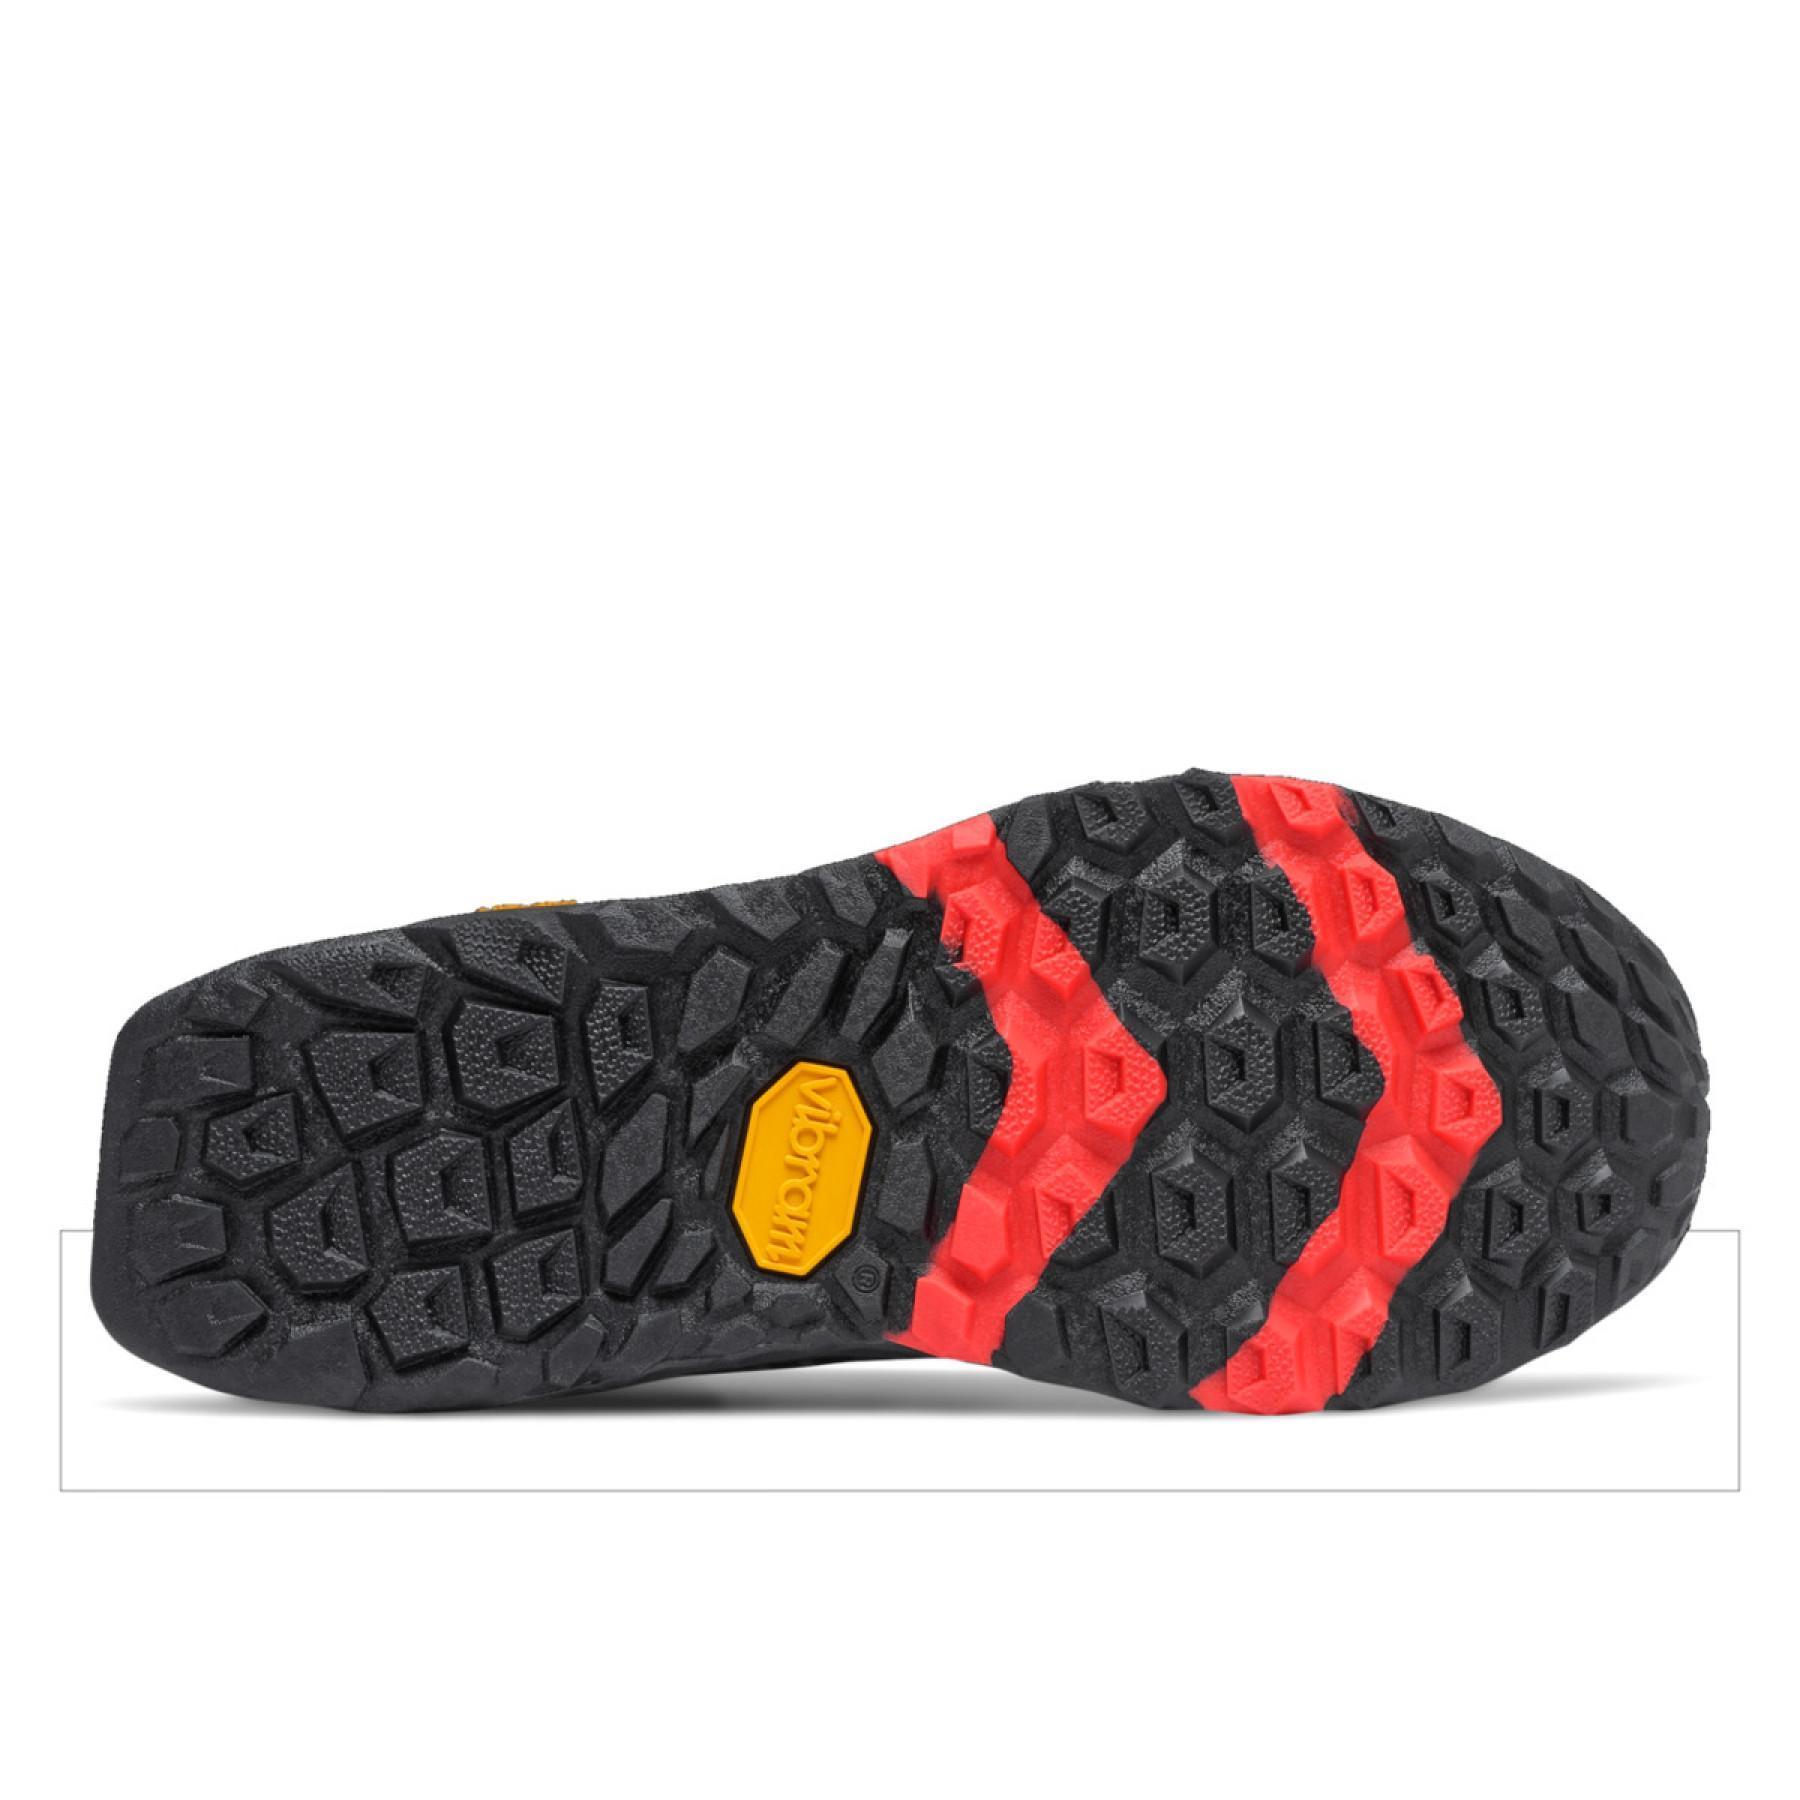 Trailrunning-Schuhe für Frauen New Balance fresh foam hierro v5 gtx